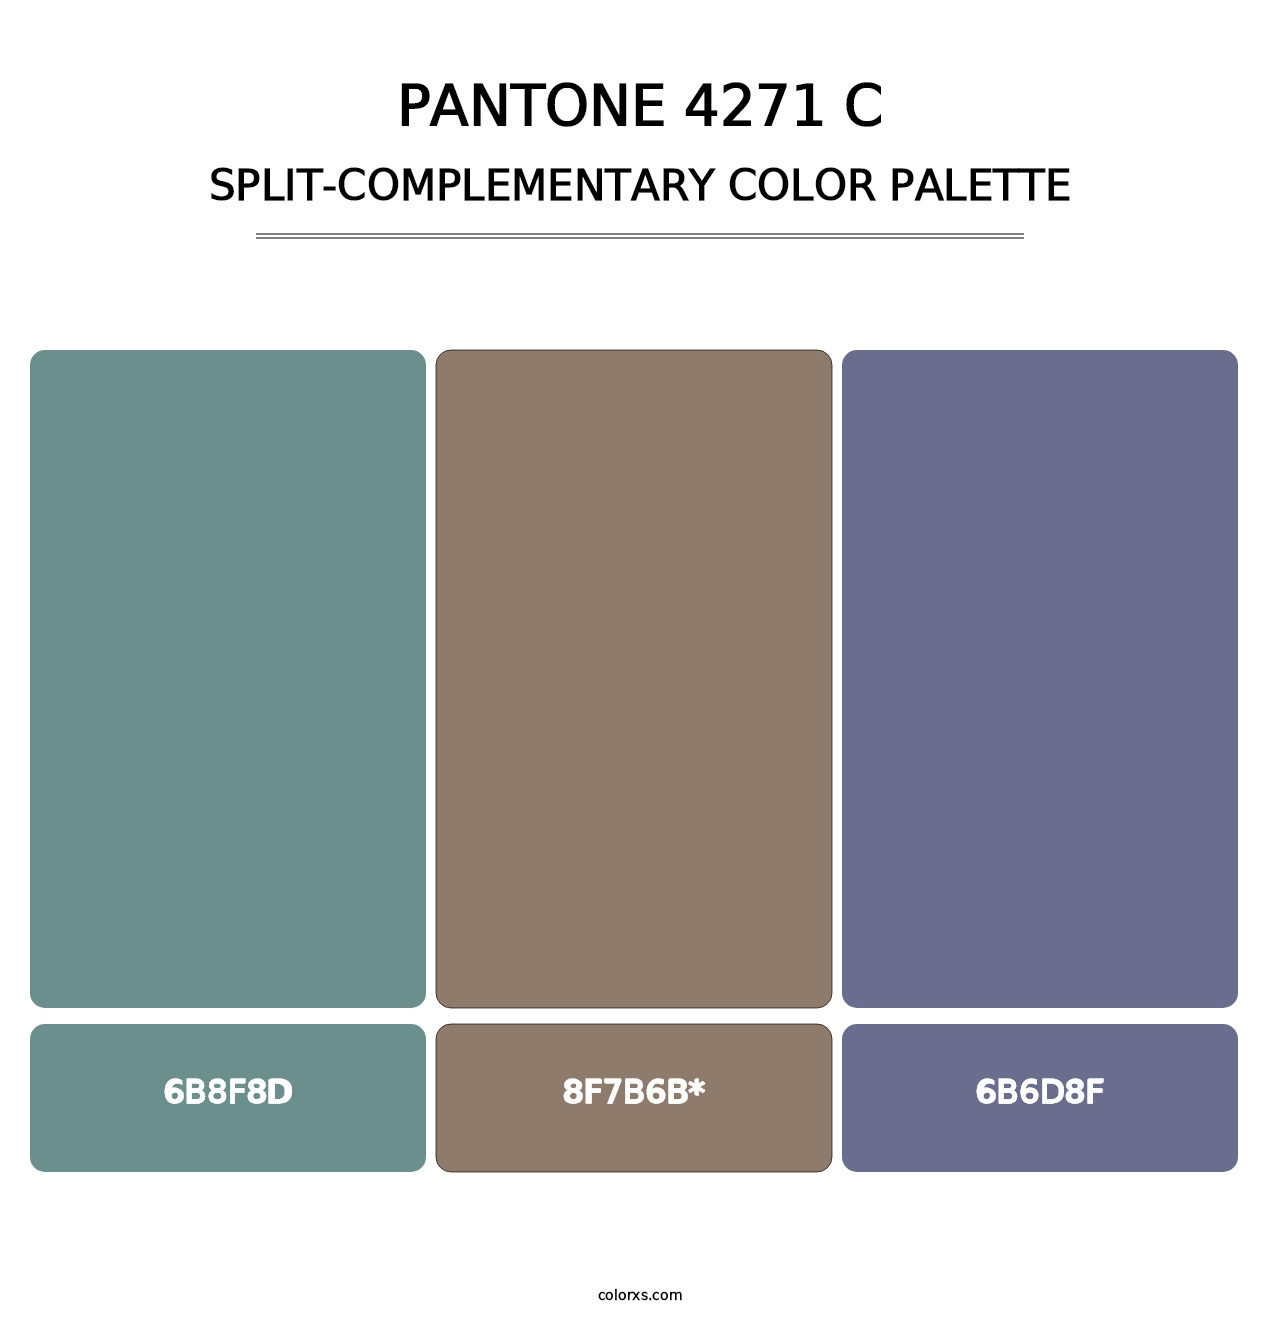 PANTONE 4271 C - Split-Complementary Color Palette